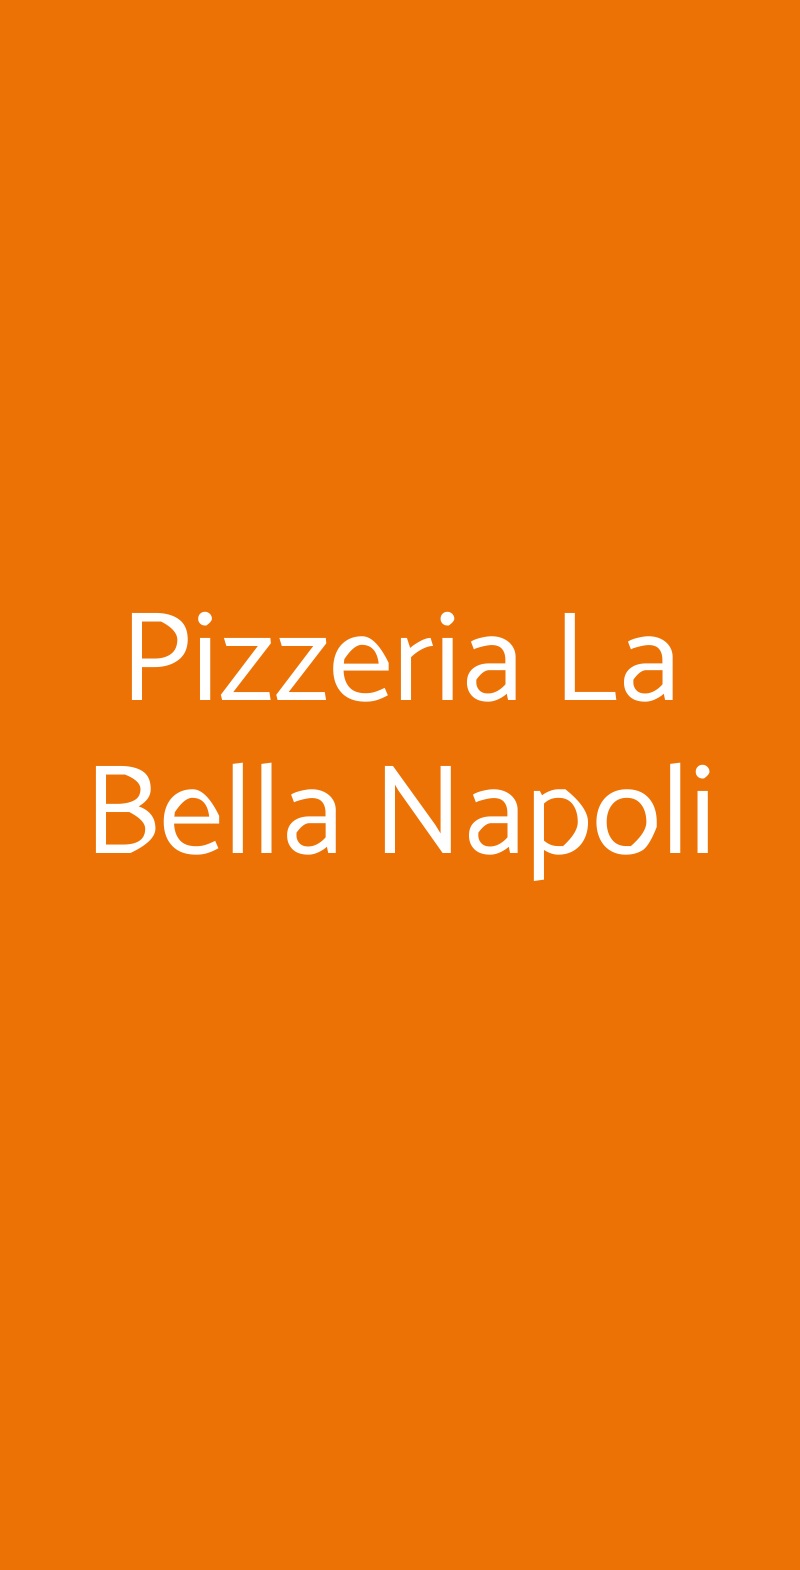 Pizzeria La Bella Napoli Cassano Magnago menù 1 pagina